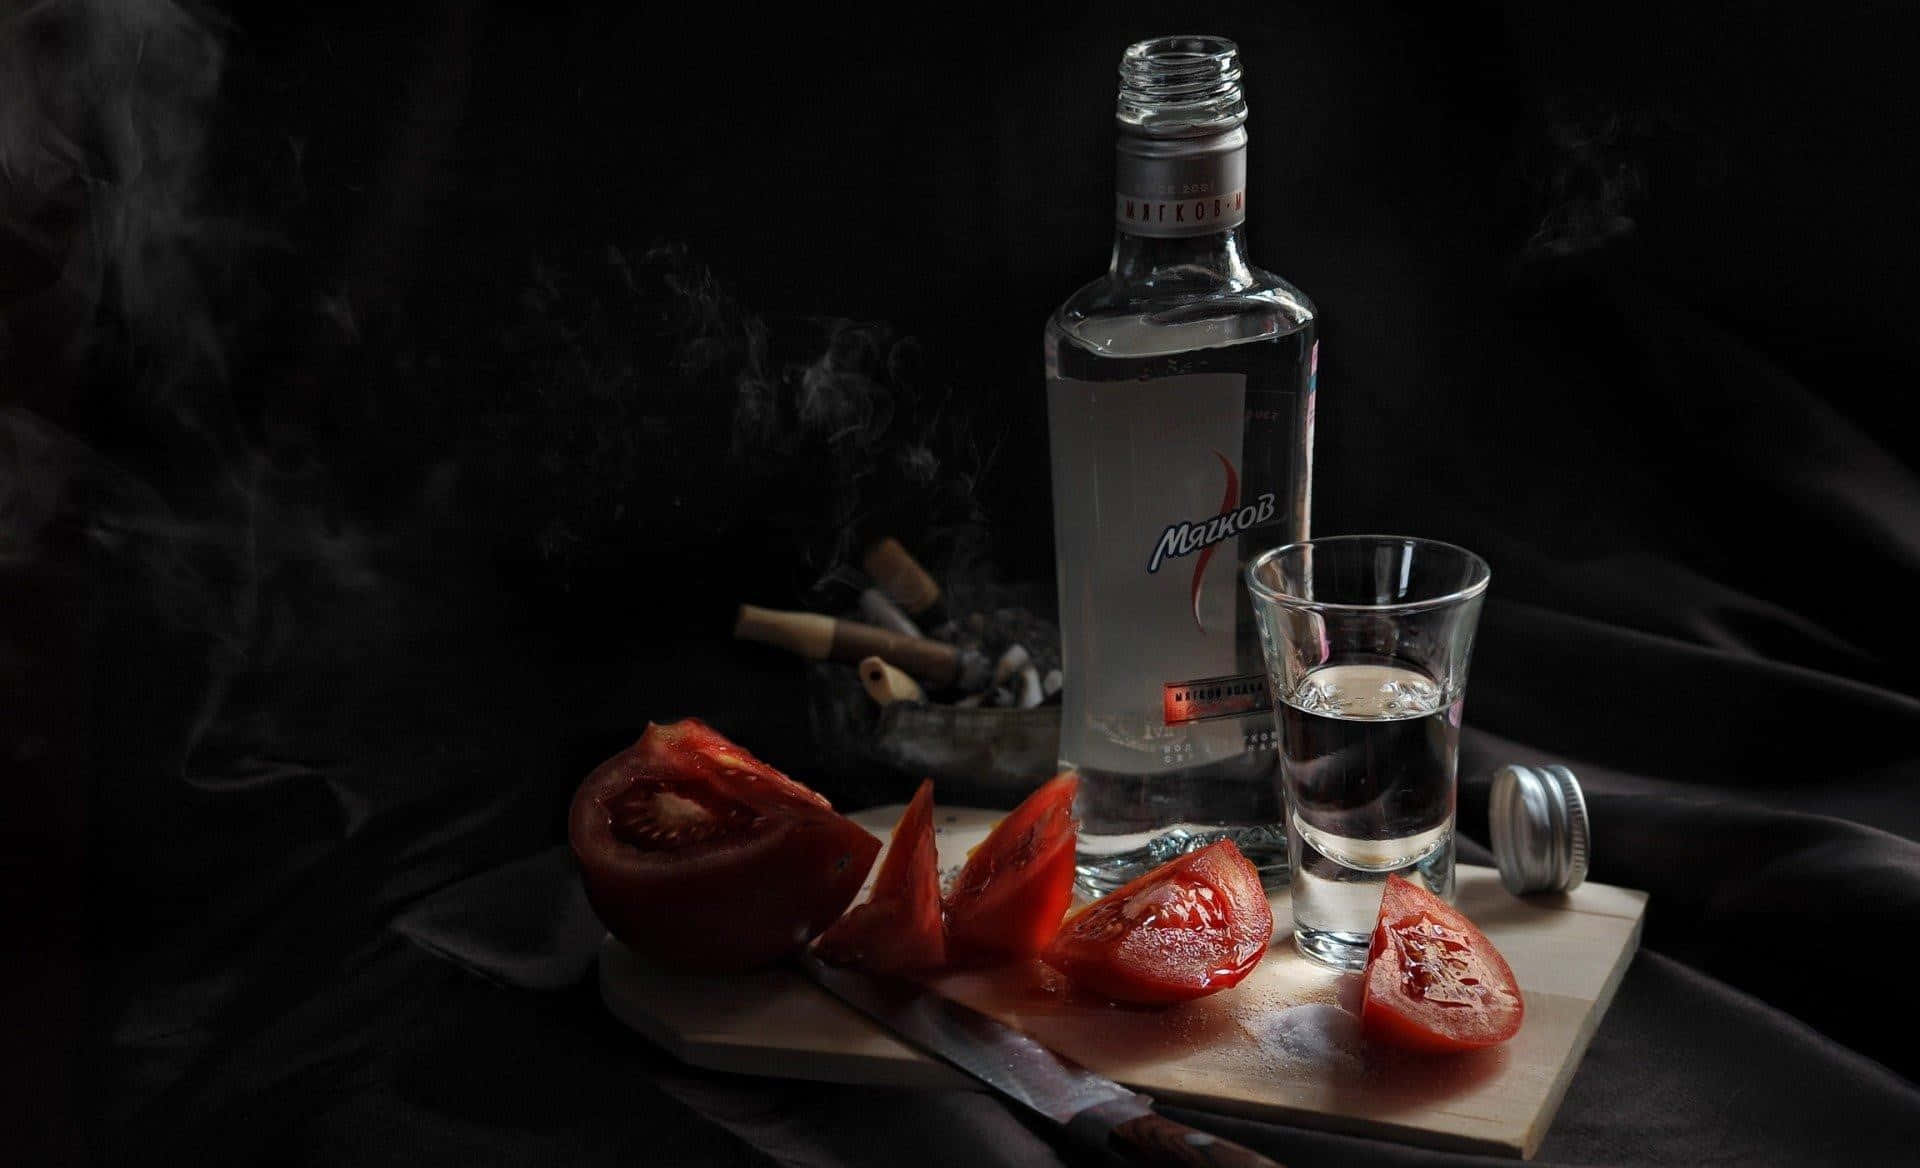 Unabottiglia Di Vodka E Pomodori Su Un Tagliere Da Cucina